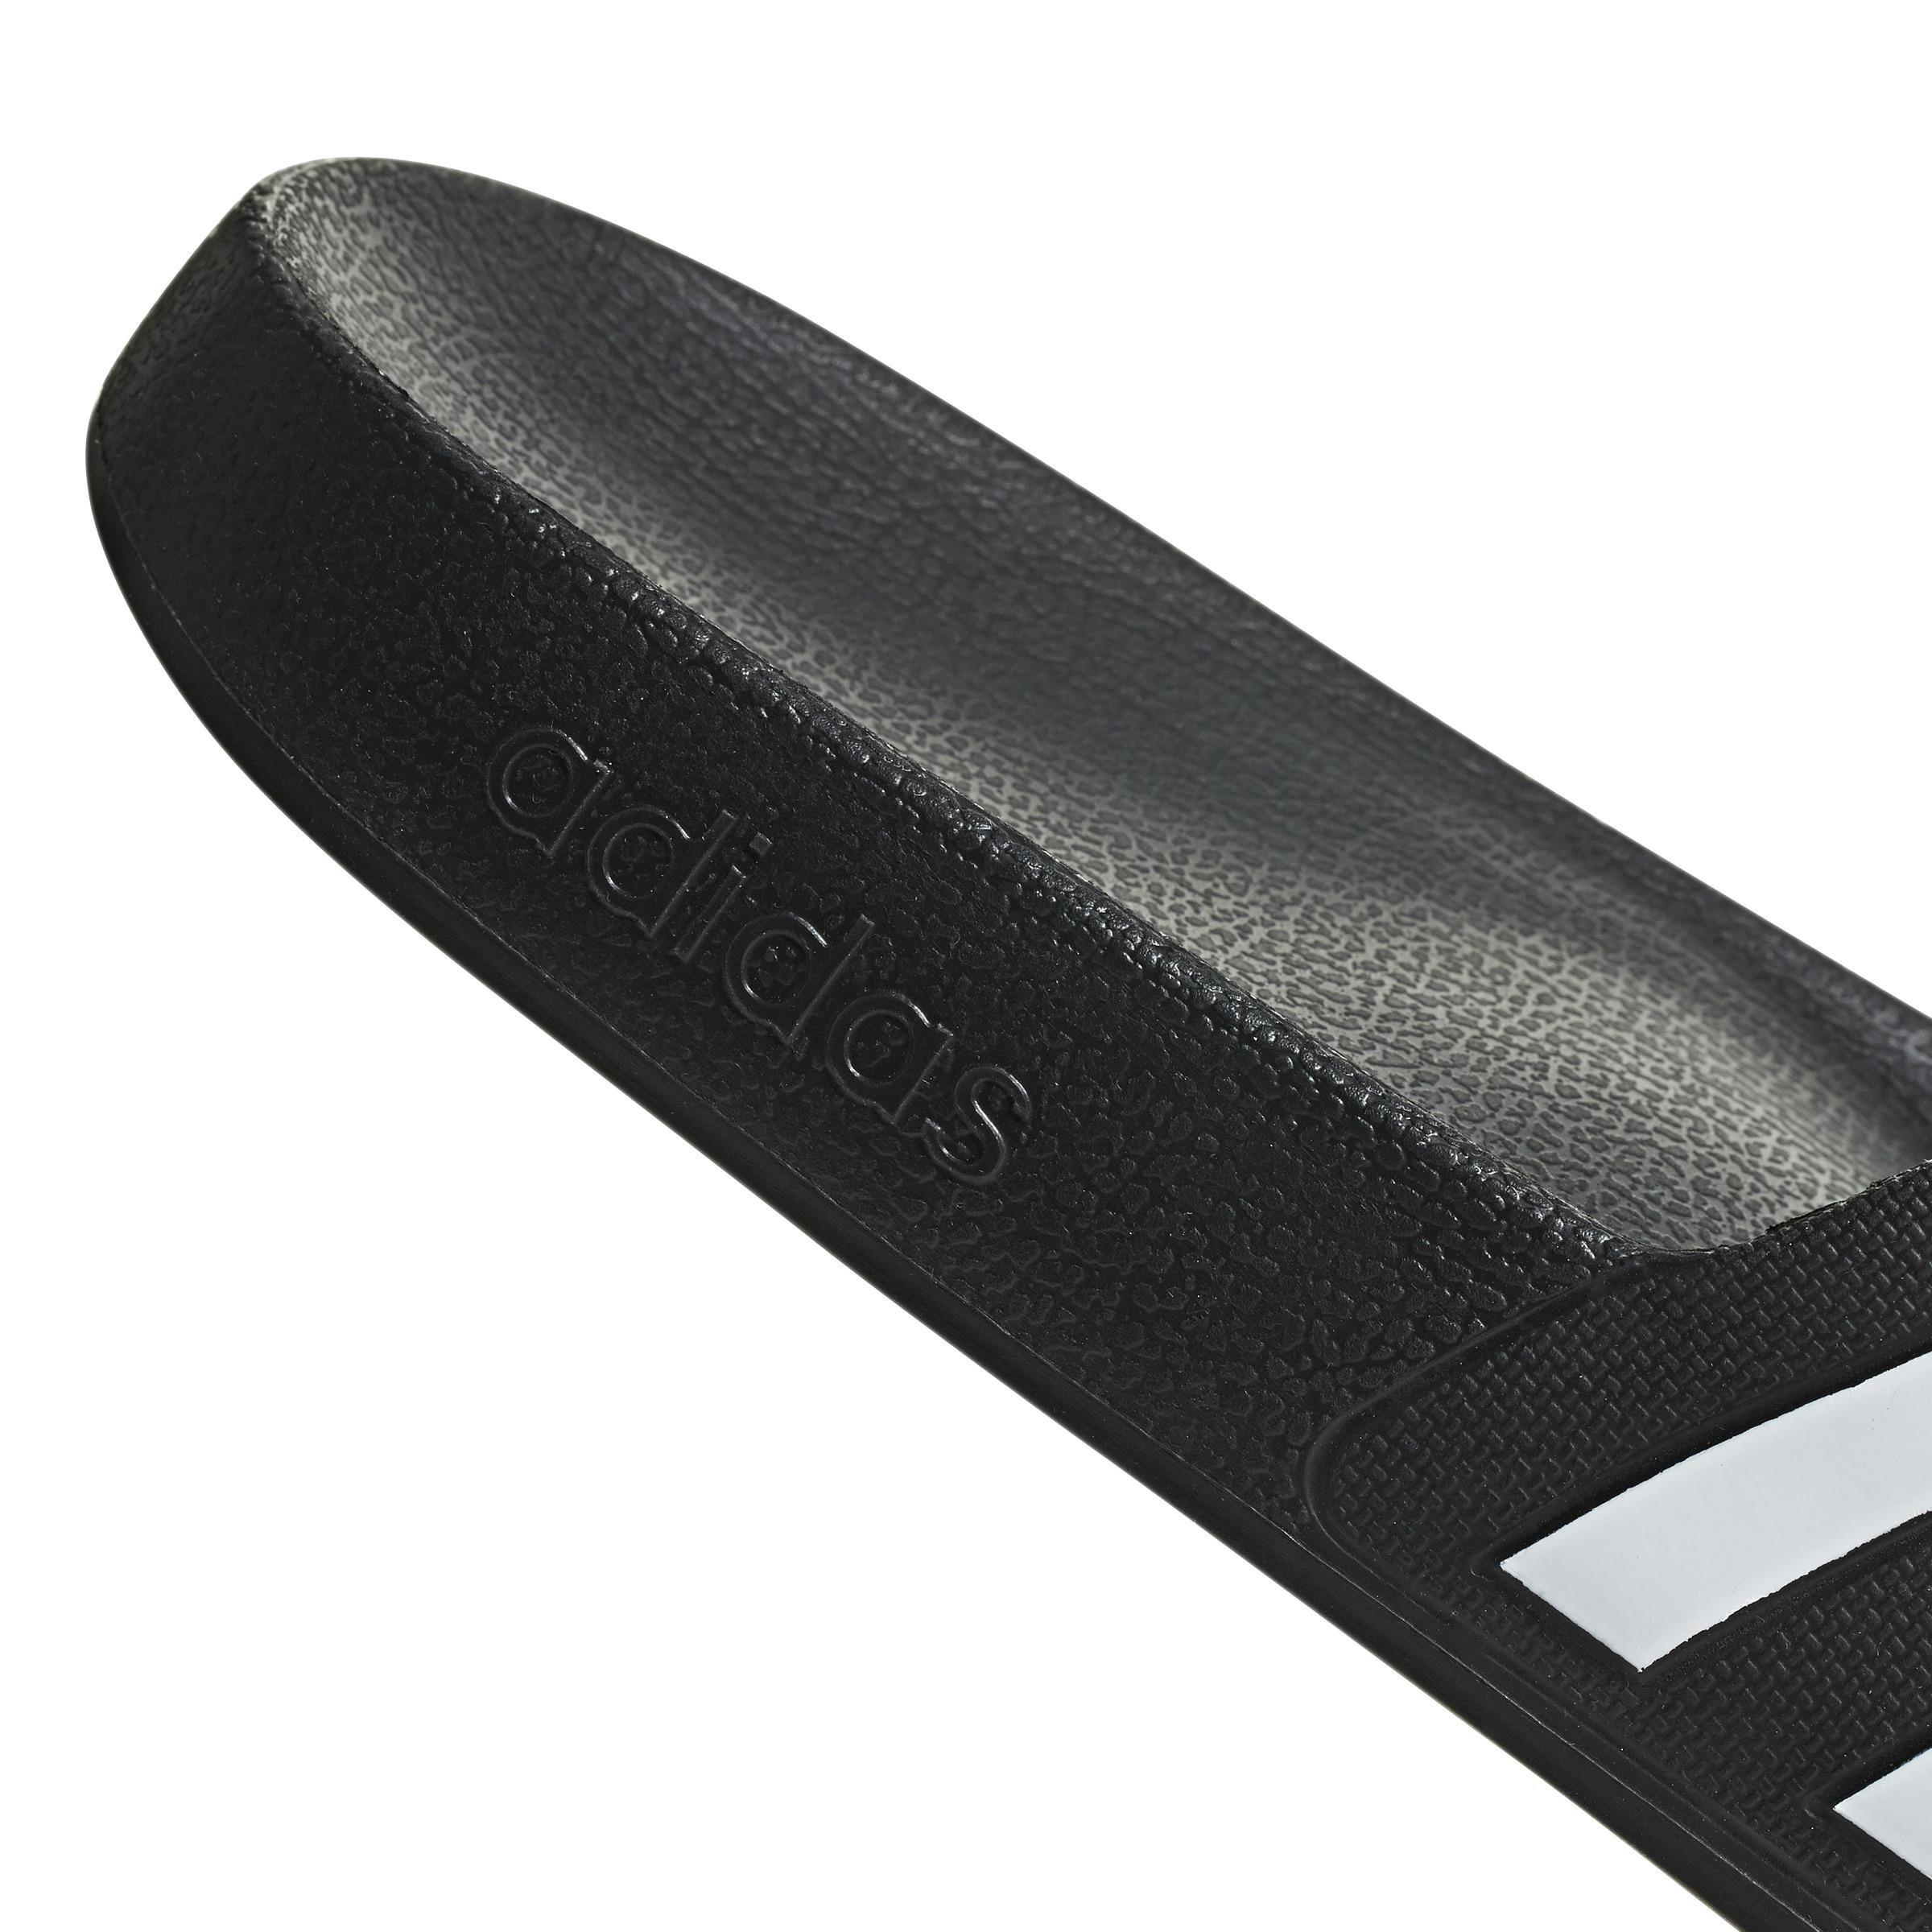 adidas - Unisex Adilette Aqua Slides, black